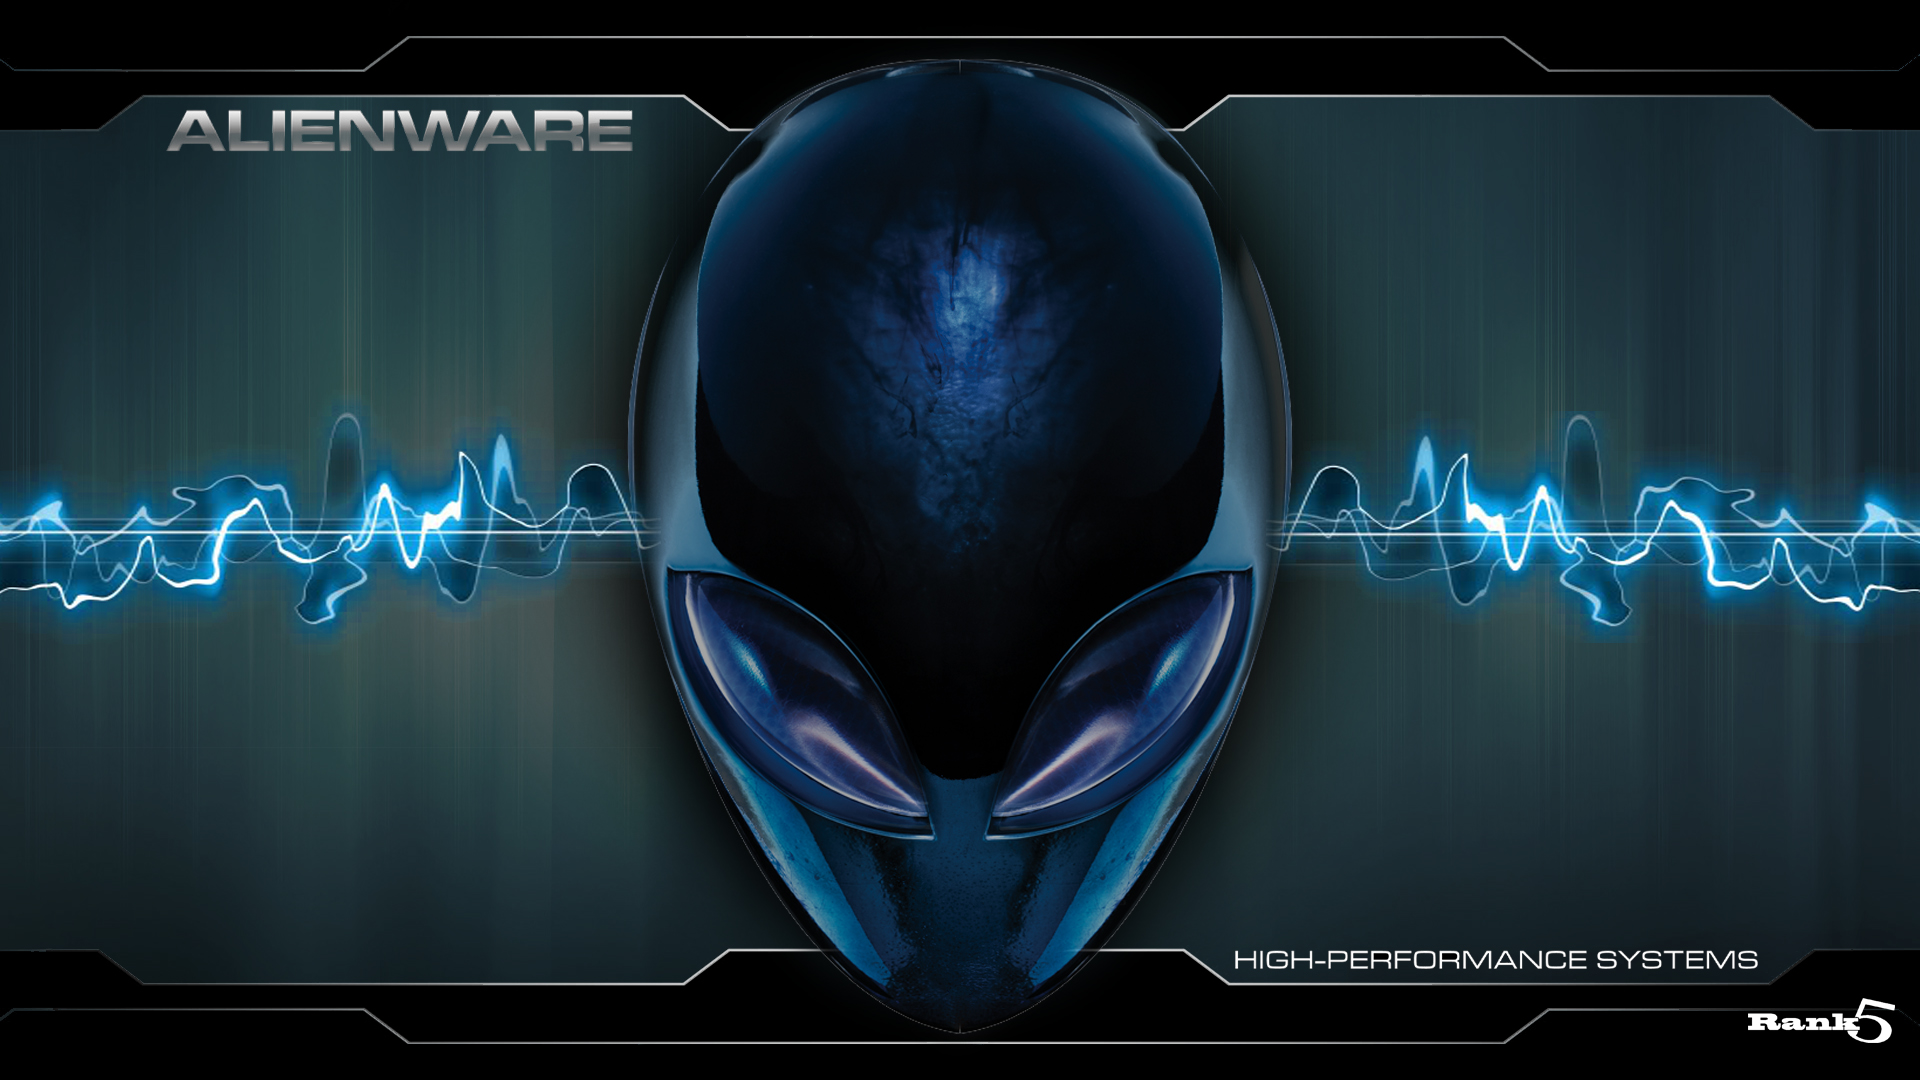 fond d'écran bleu alienware,casque,modélisation 3d,bleu électrique,police de caractère,bouche